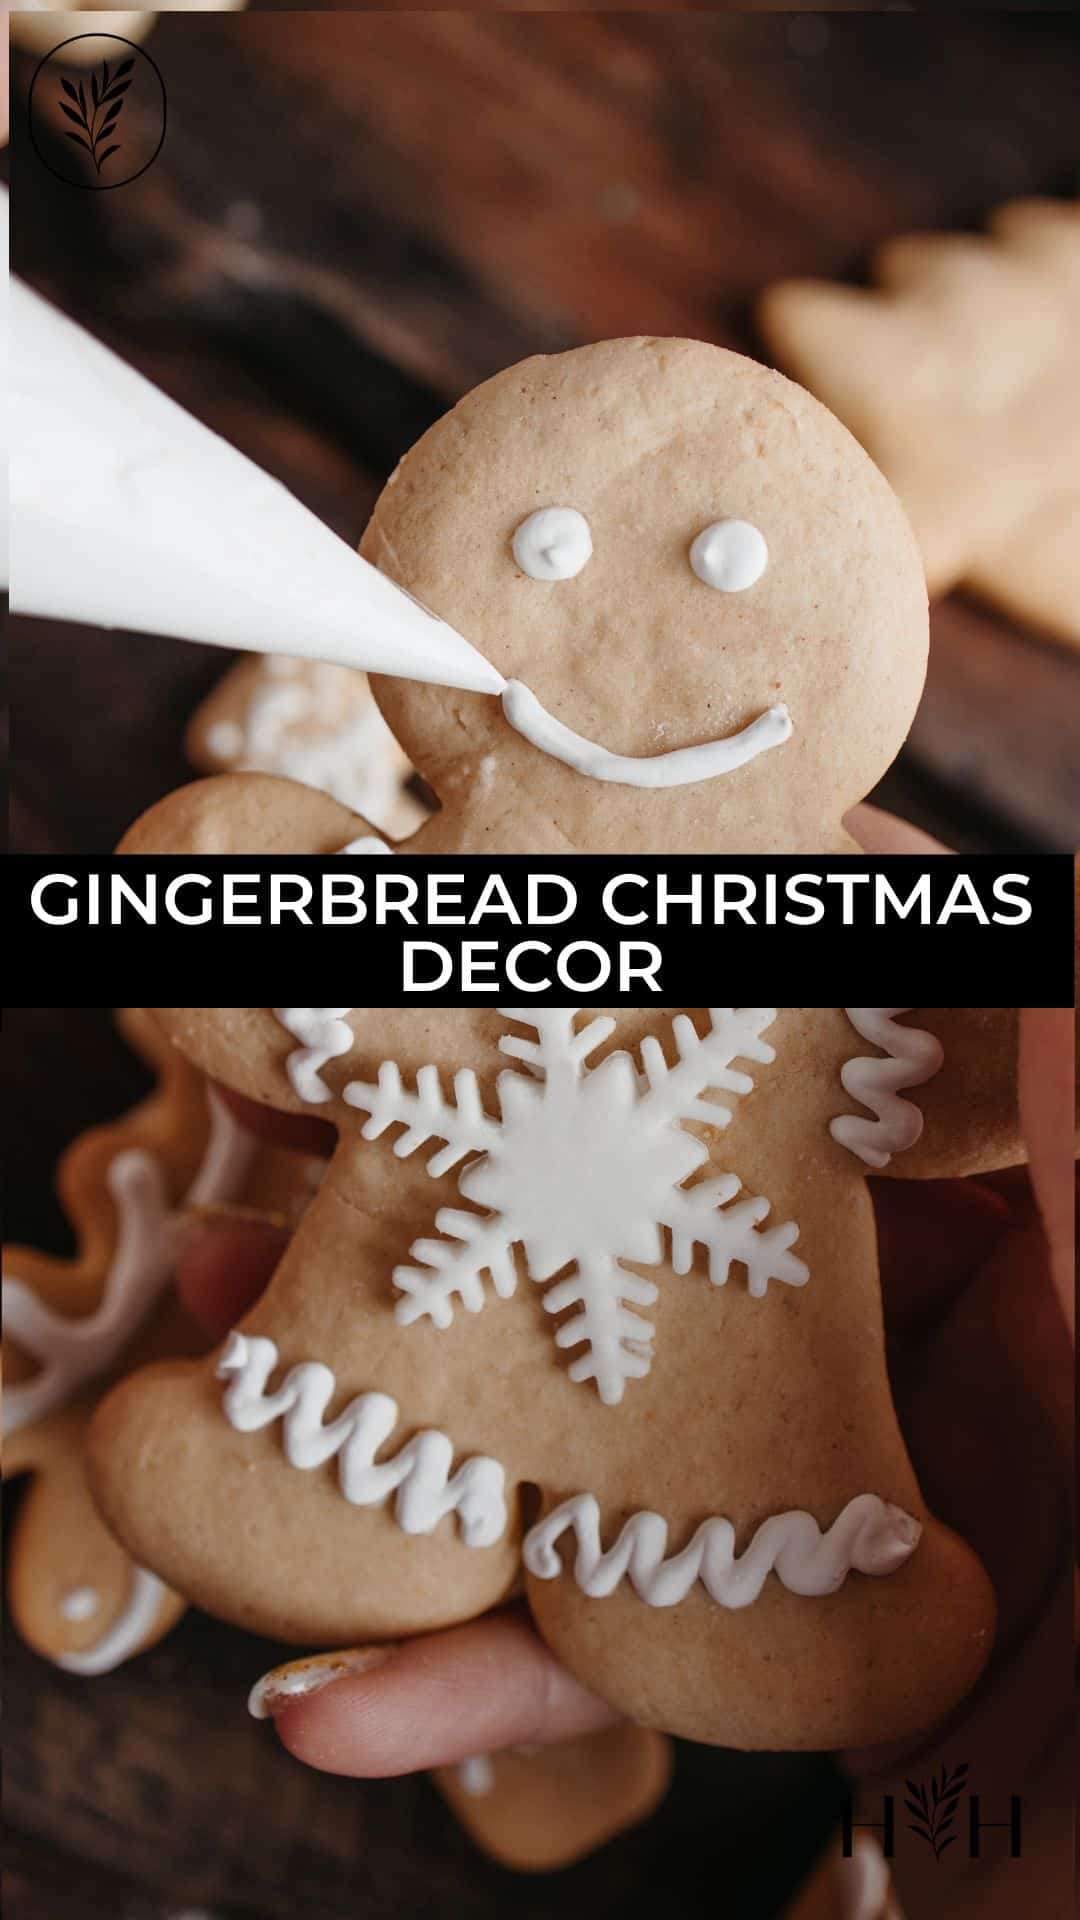 Gingerbread christmas decor via @home4theharvest